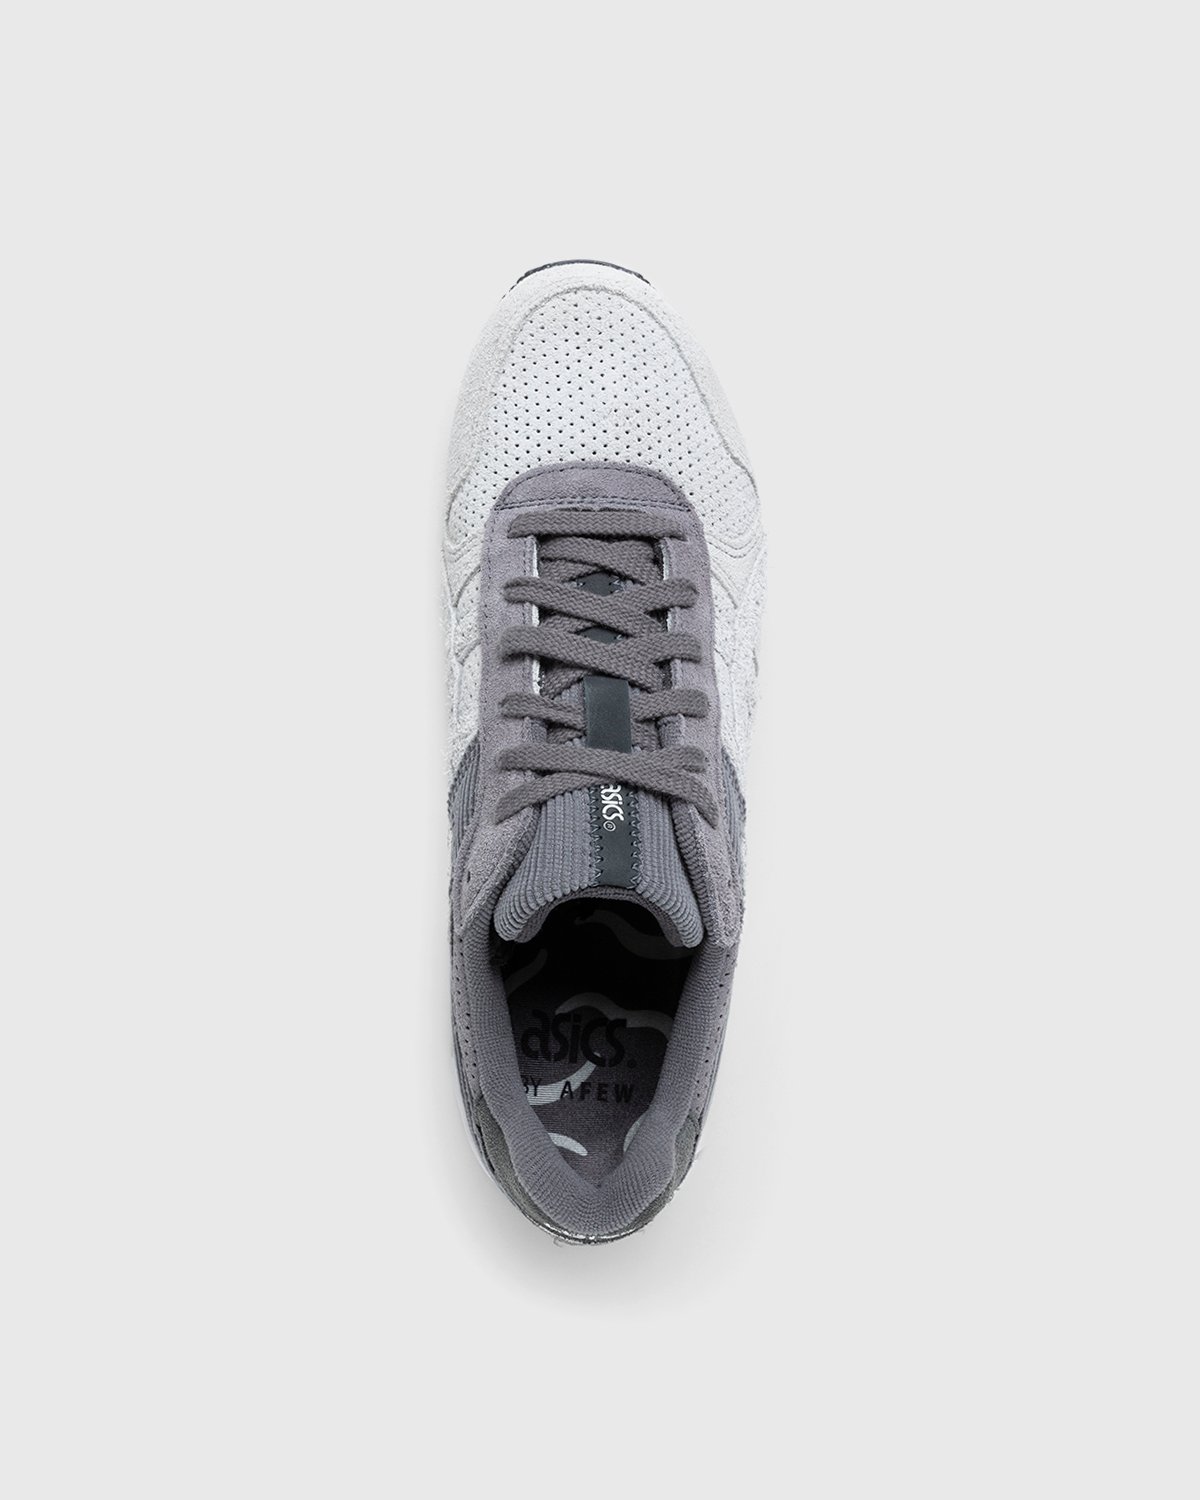 asics x Afew - GT-II Polar Shade/Carbon - Footwear - Grey - Image 5